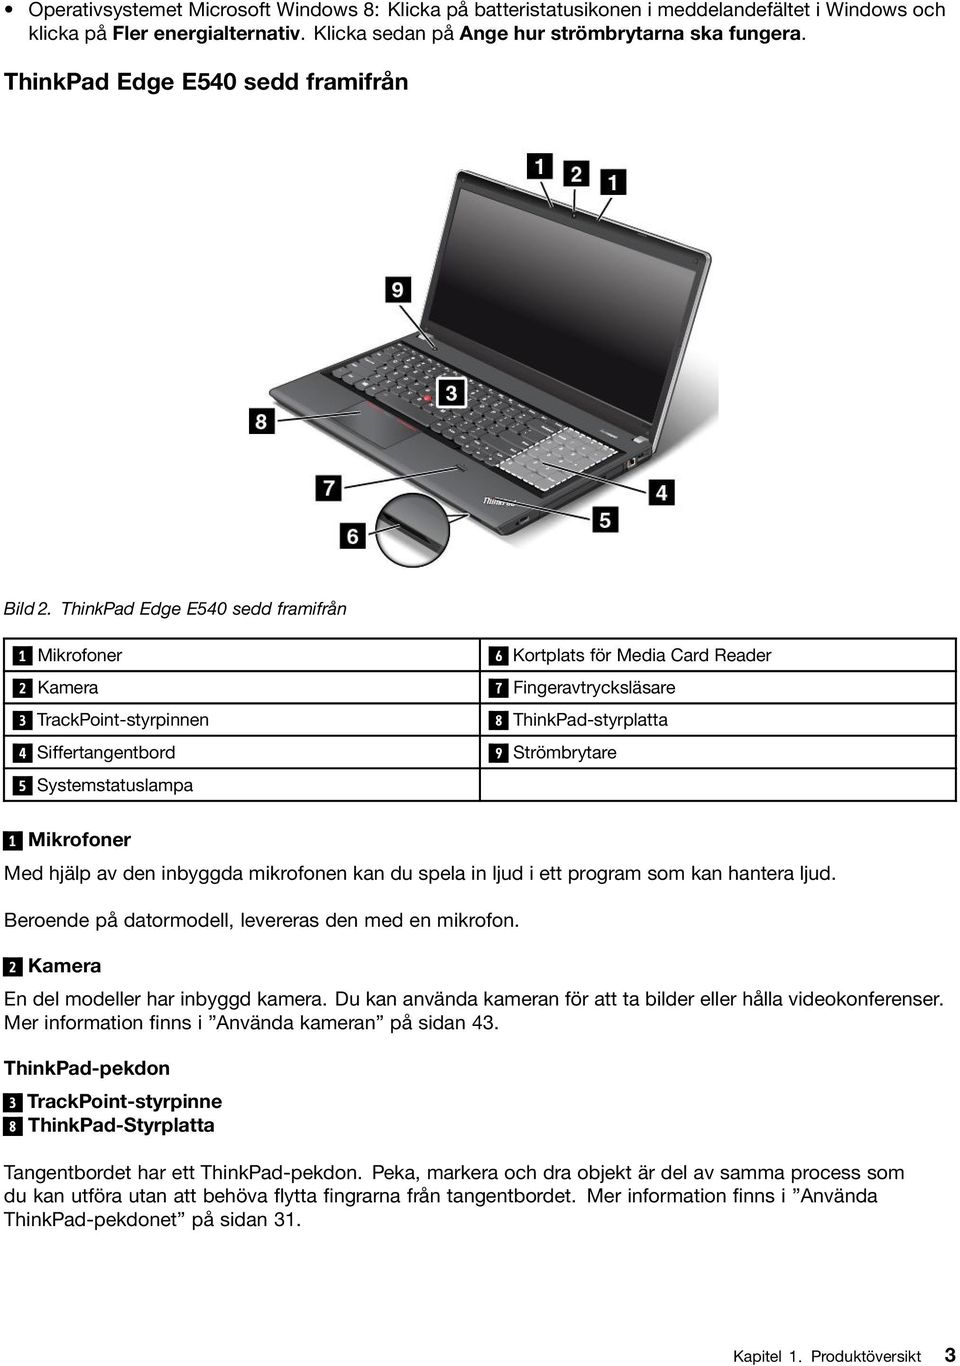 ThinkPad Edge E540 sedd framifrån 1 Mikrofoner 6 Kortplats för Media Card Reader 2 Kamera 7 Fingeravtrycksläsare 3 TrackPoint-styrpinnen 8 ThinkPad-styrplatta 4 Siffertangentbord 9 Strömbrytare 5